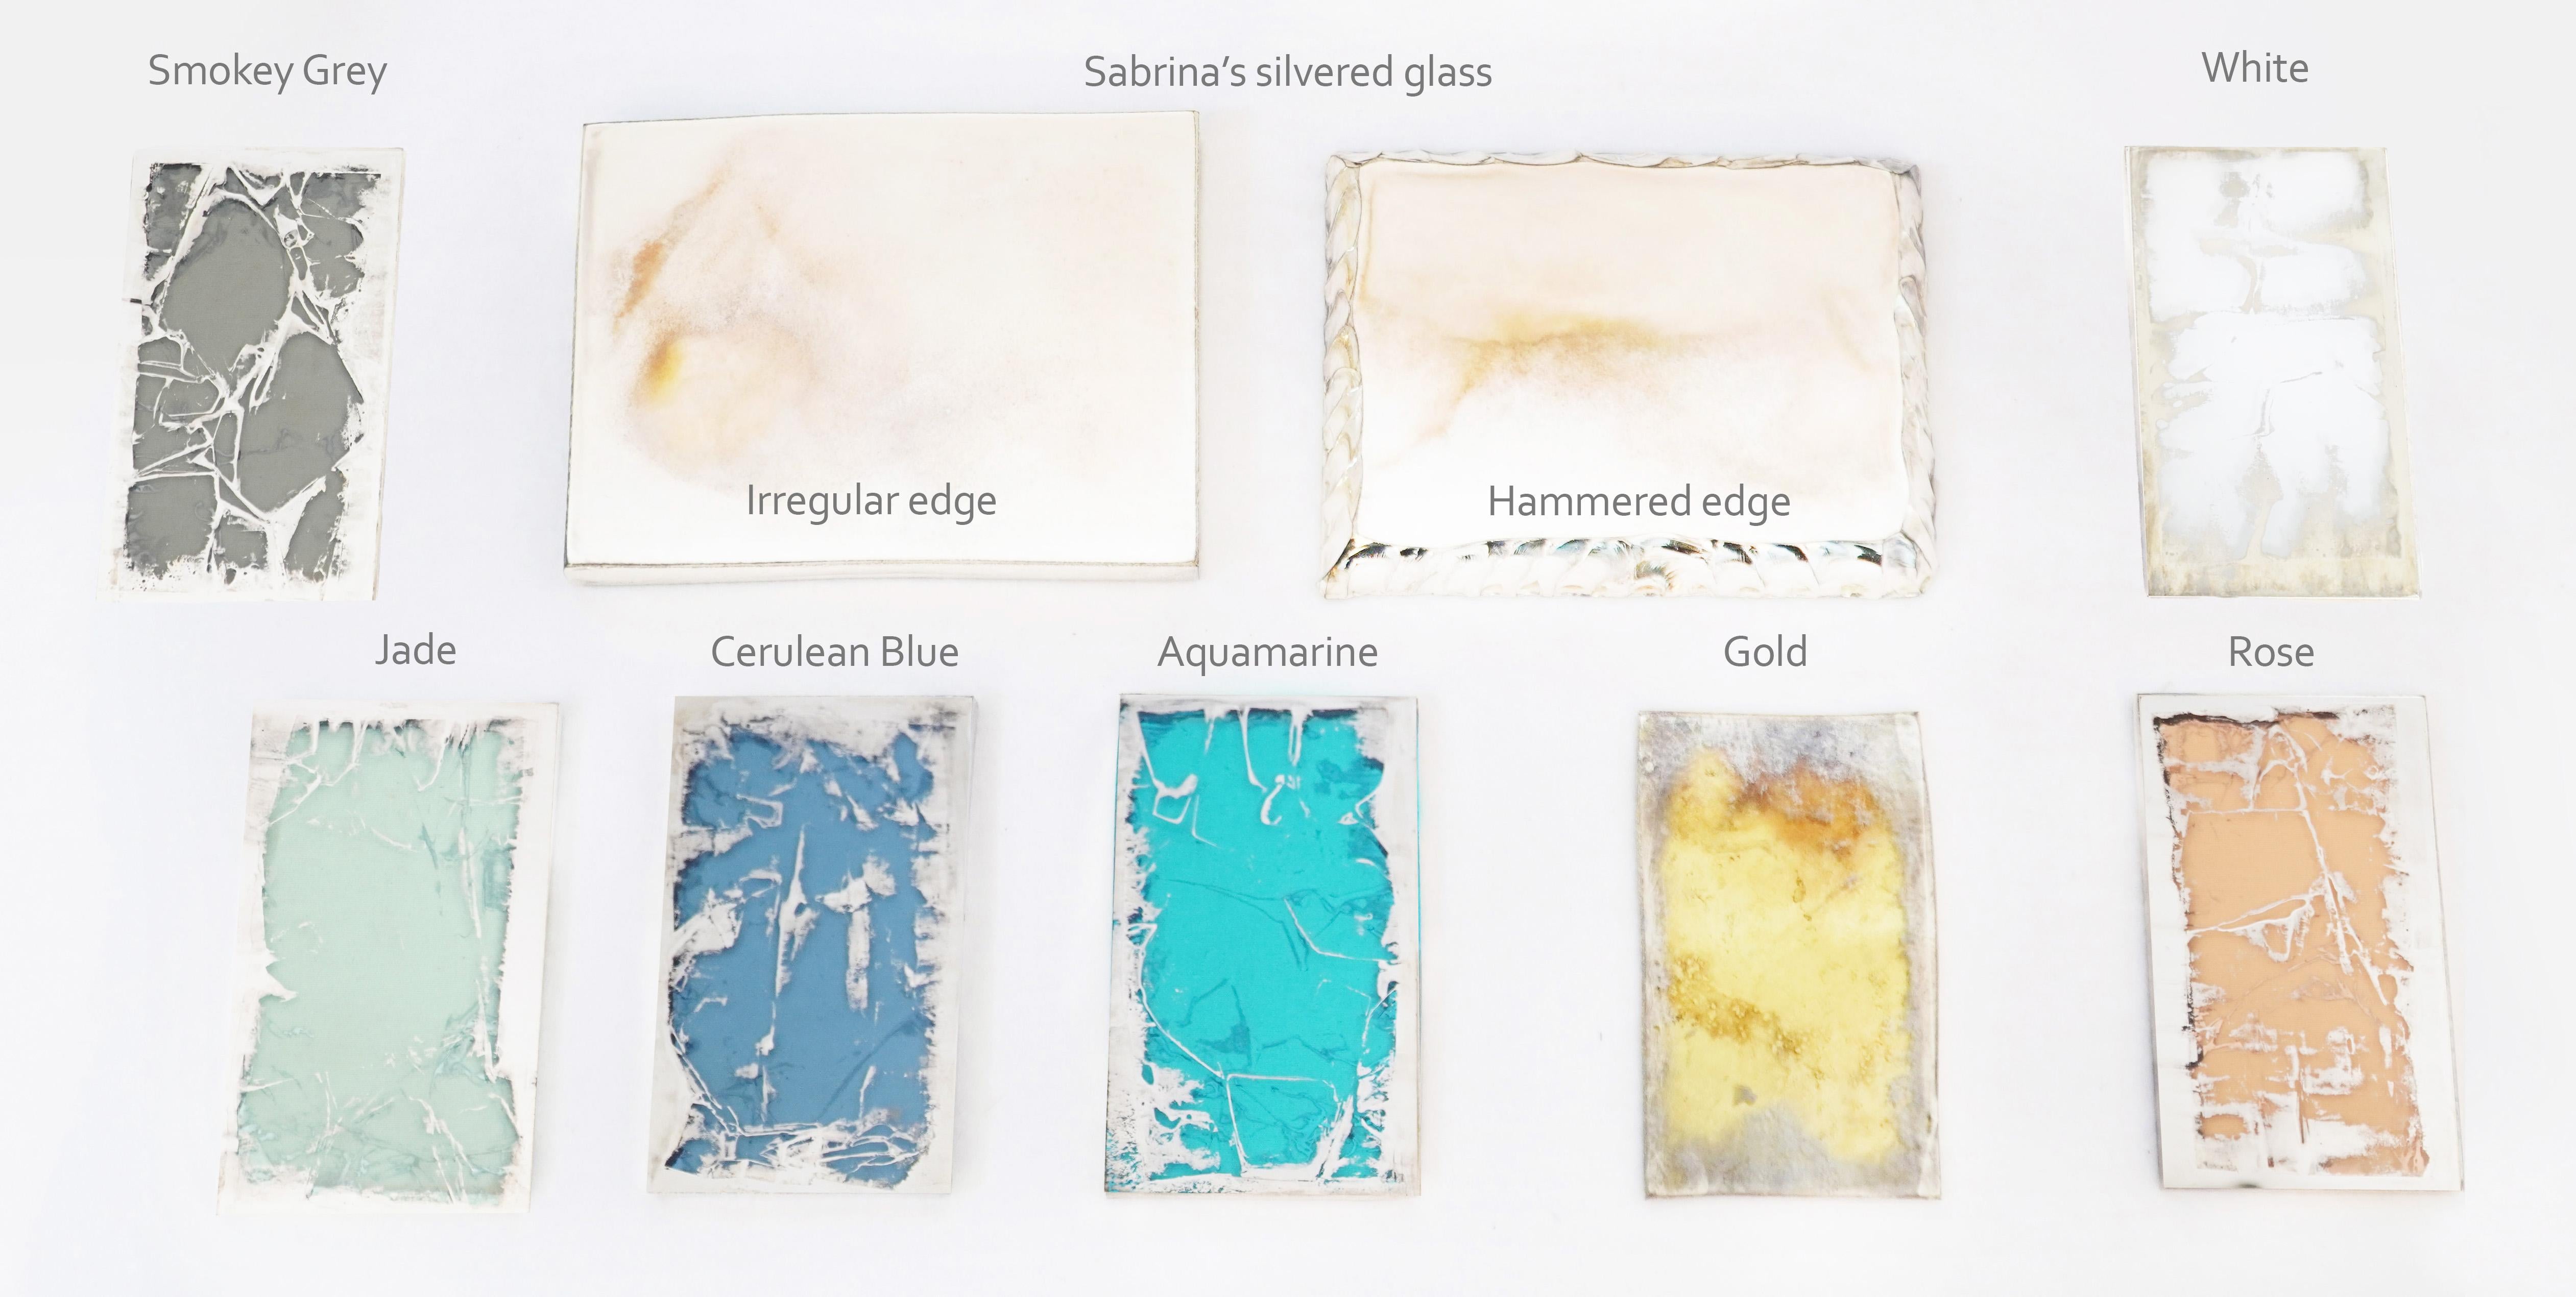 Eine Auswahl an kostbaren Mustern aus versilbertem Glas von Sabrina Landini.
Wählen Sie Ihre Farben, insgesamt werden drei Stück zur Verfügung gestellt.
Stellen Sie Ihre Auswahlanfrage.

Wenn Sie alle in der Sabrina Landini Kollektion erhältlichen